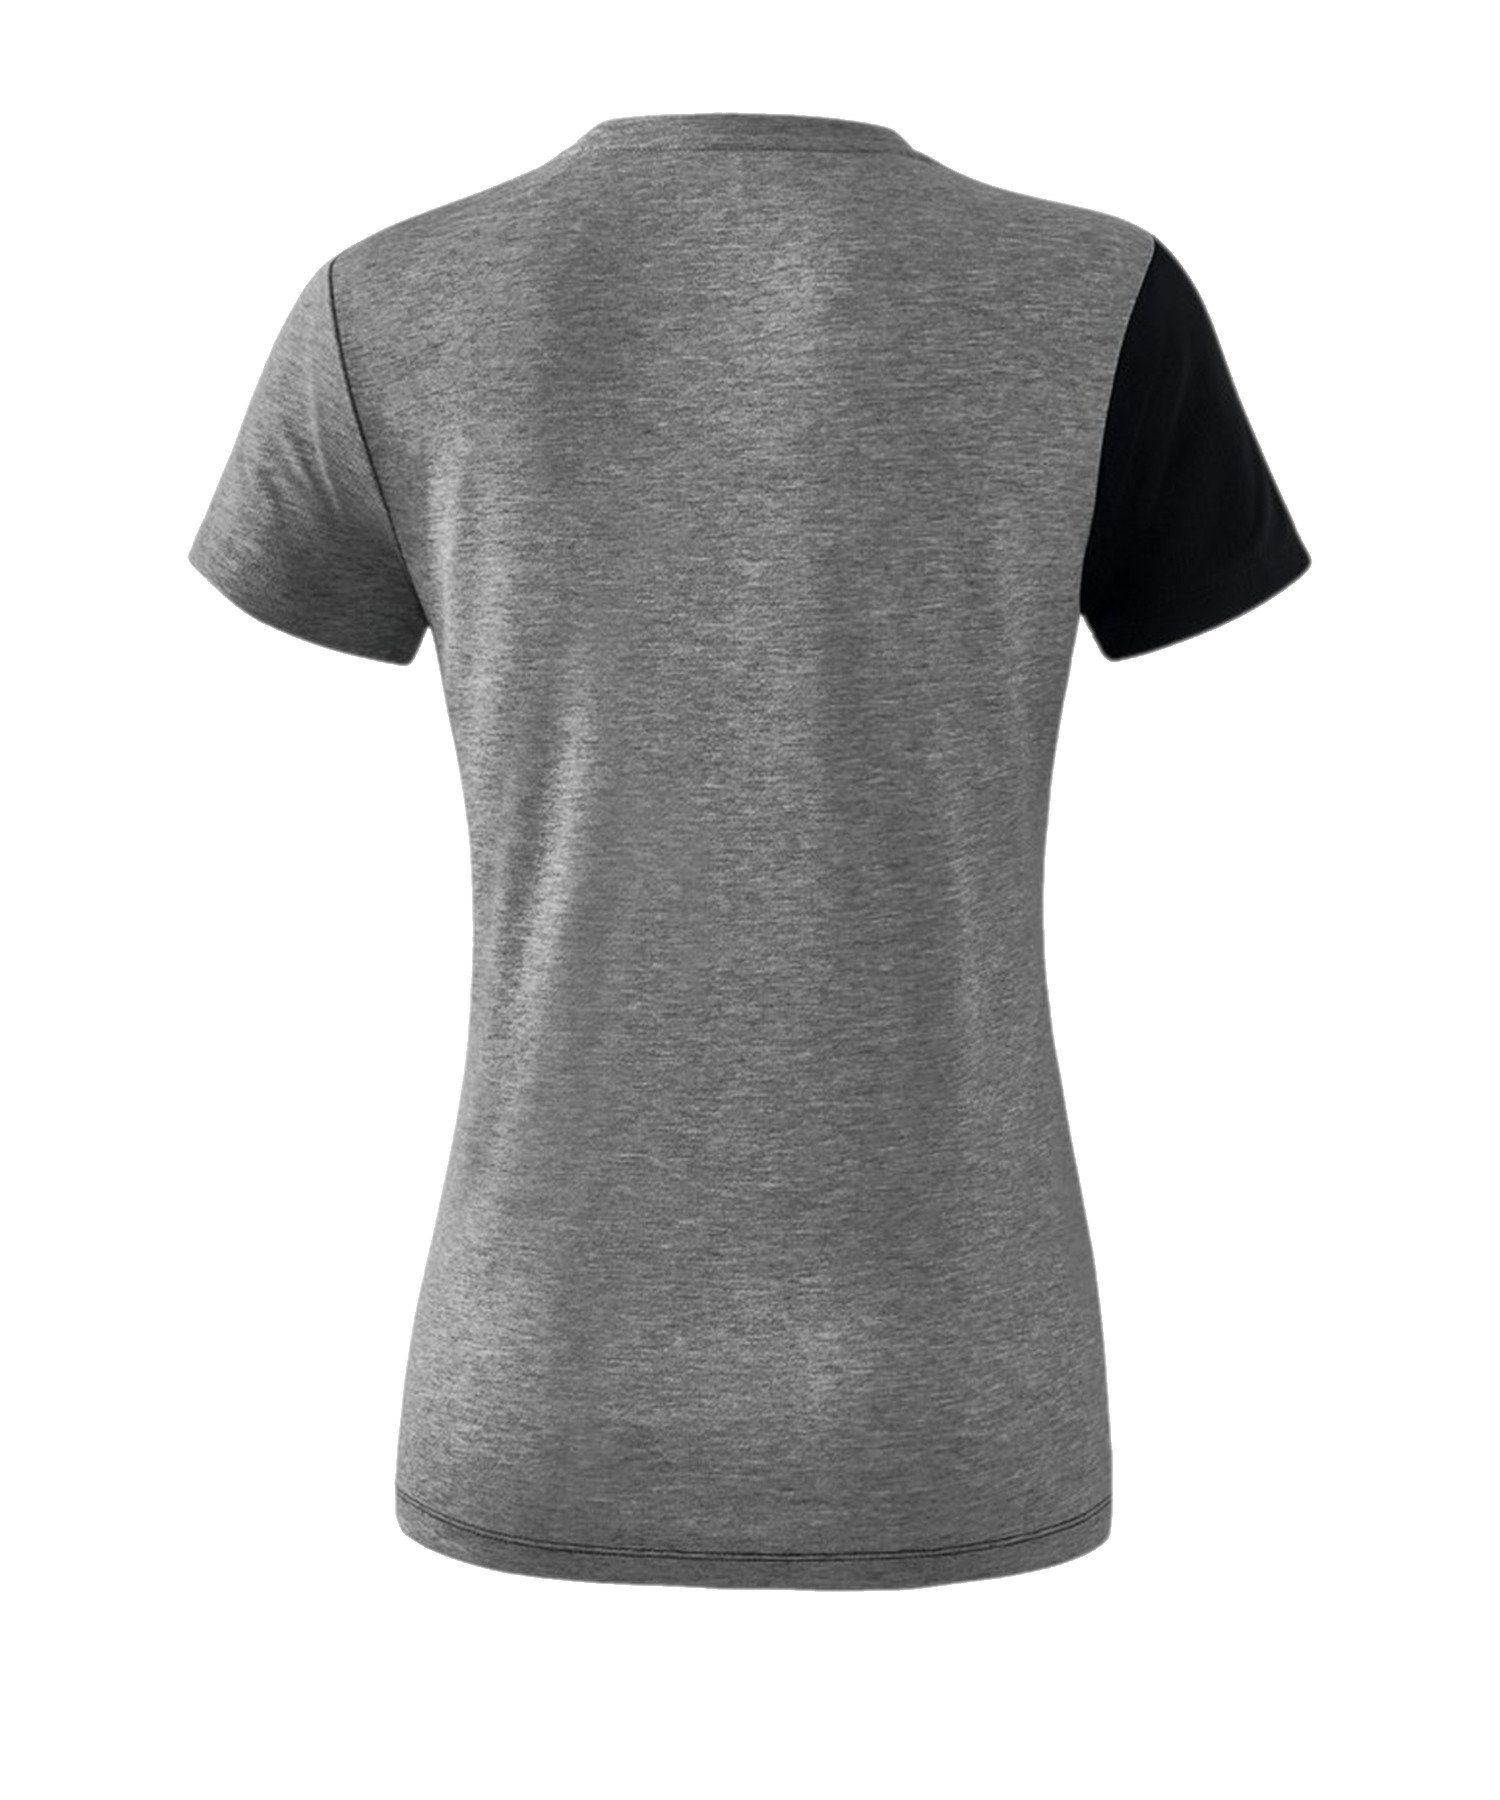 Erima T-Shirt 5-C T-Shirt Damen default SchwarzGrauWeiss